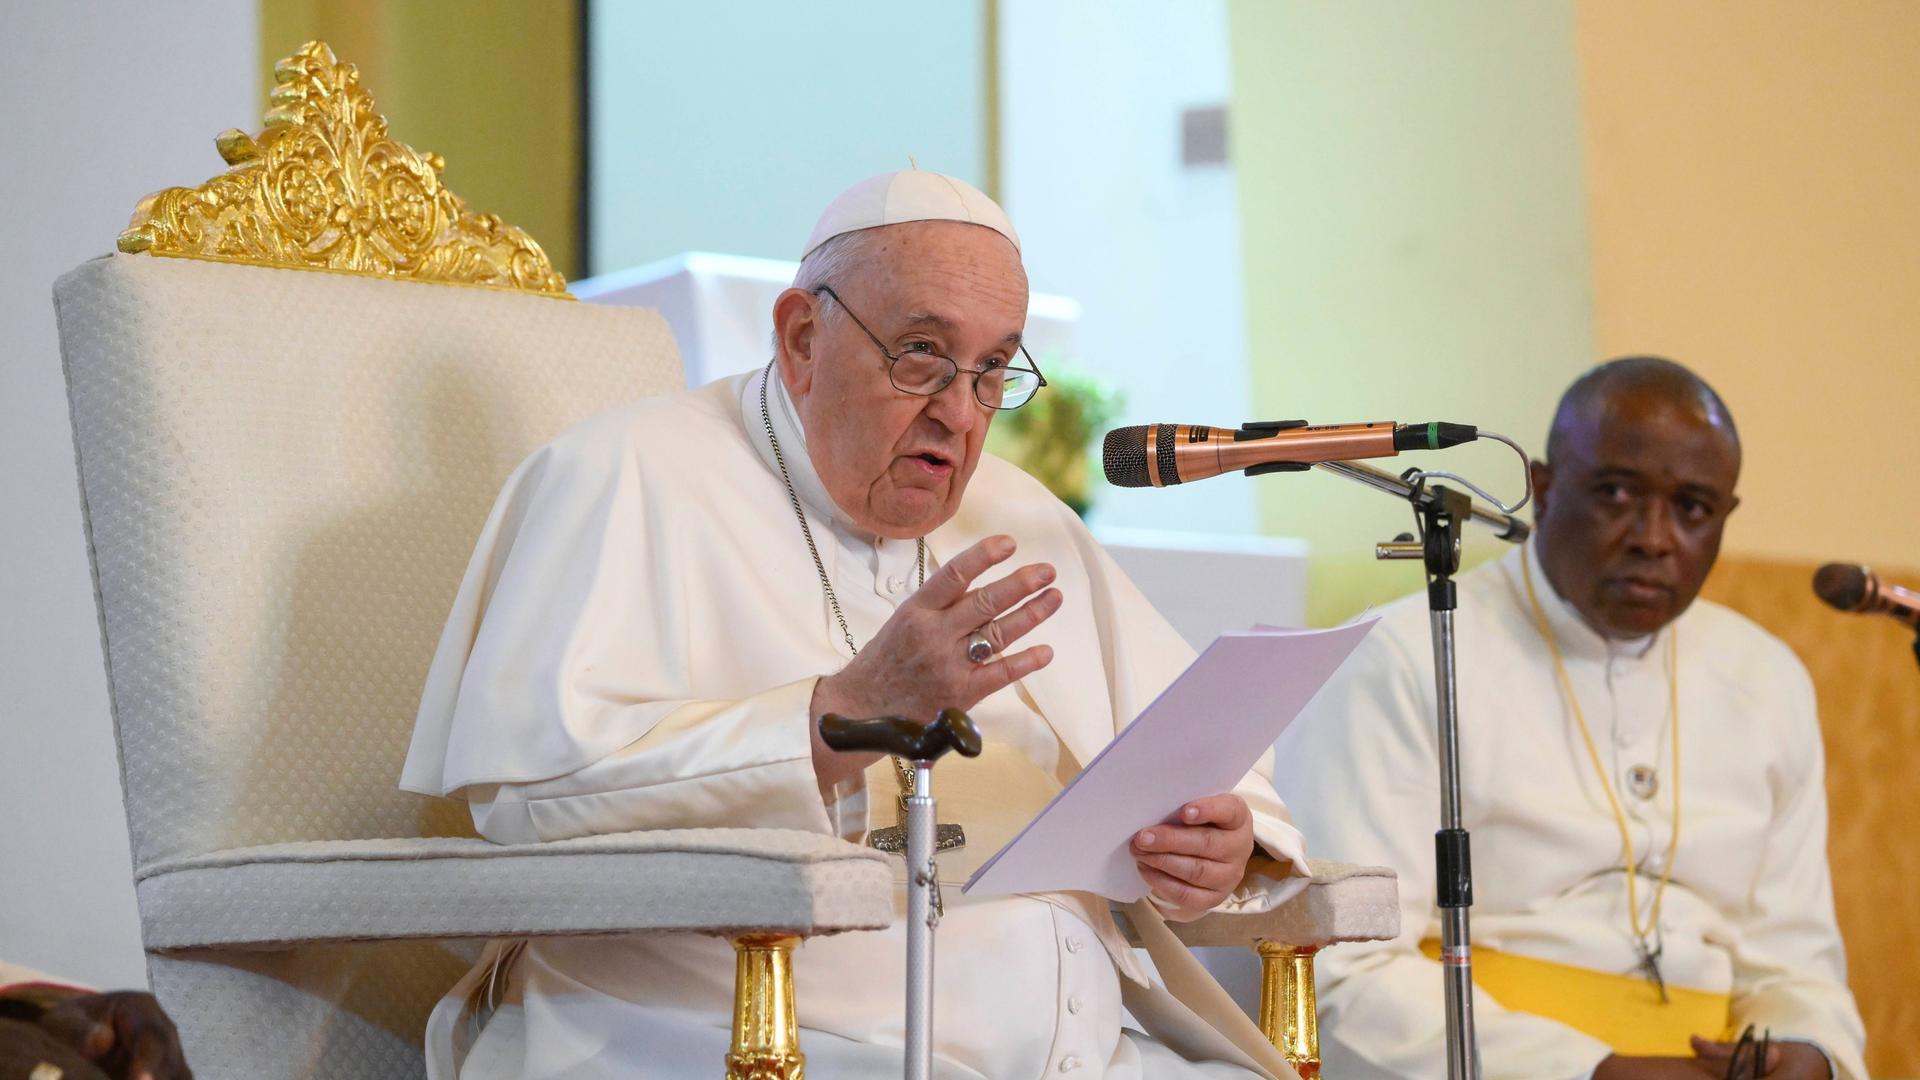 Katholische Kirche - Papst Franziskus: "Homosexualität nicht kriminalisieren"